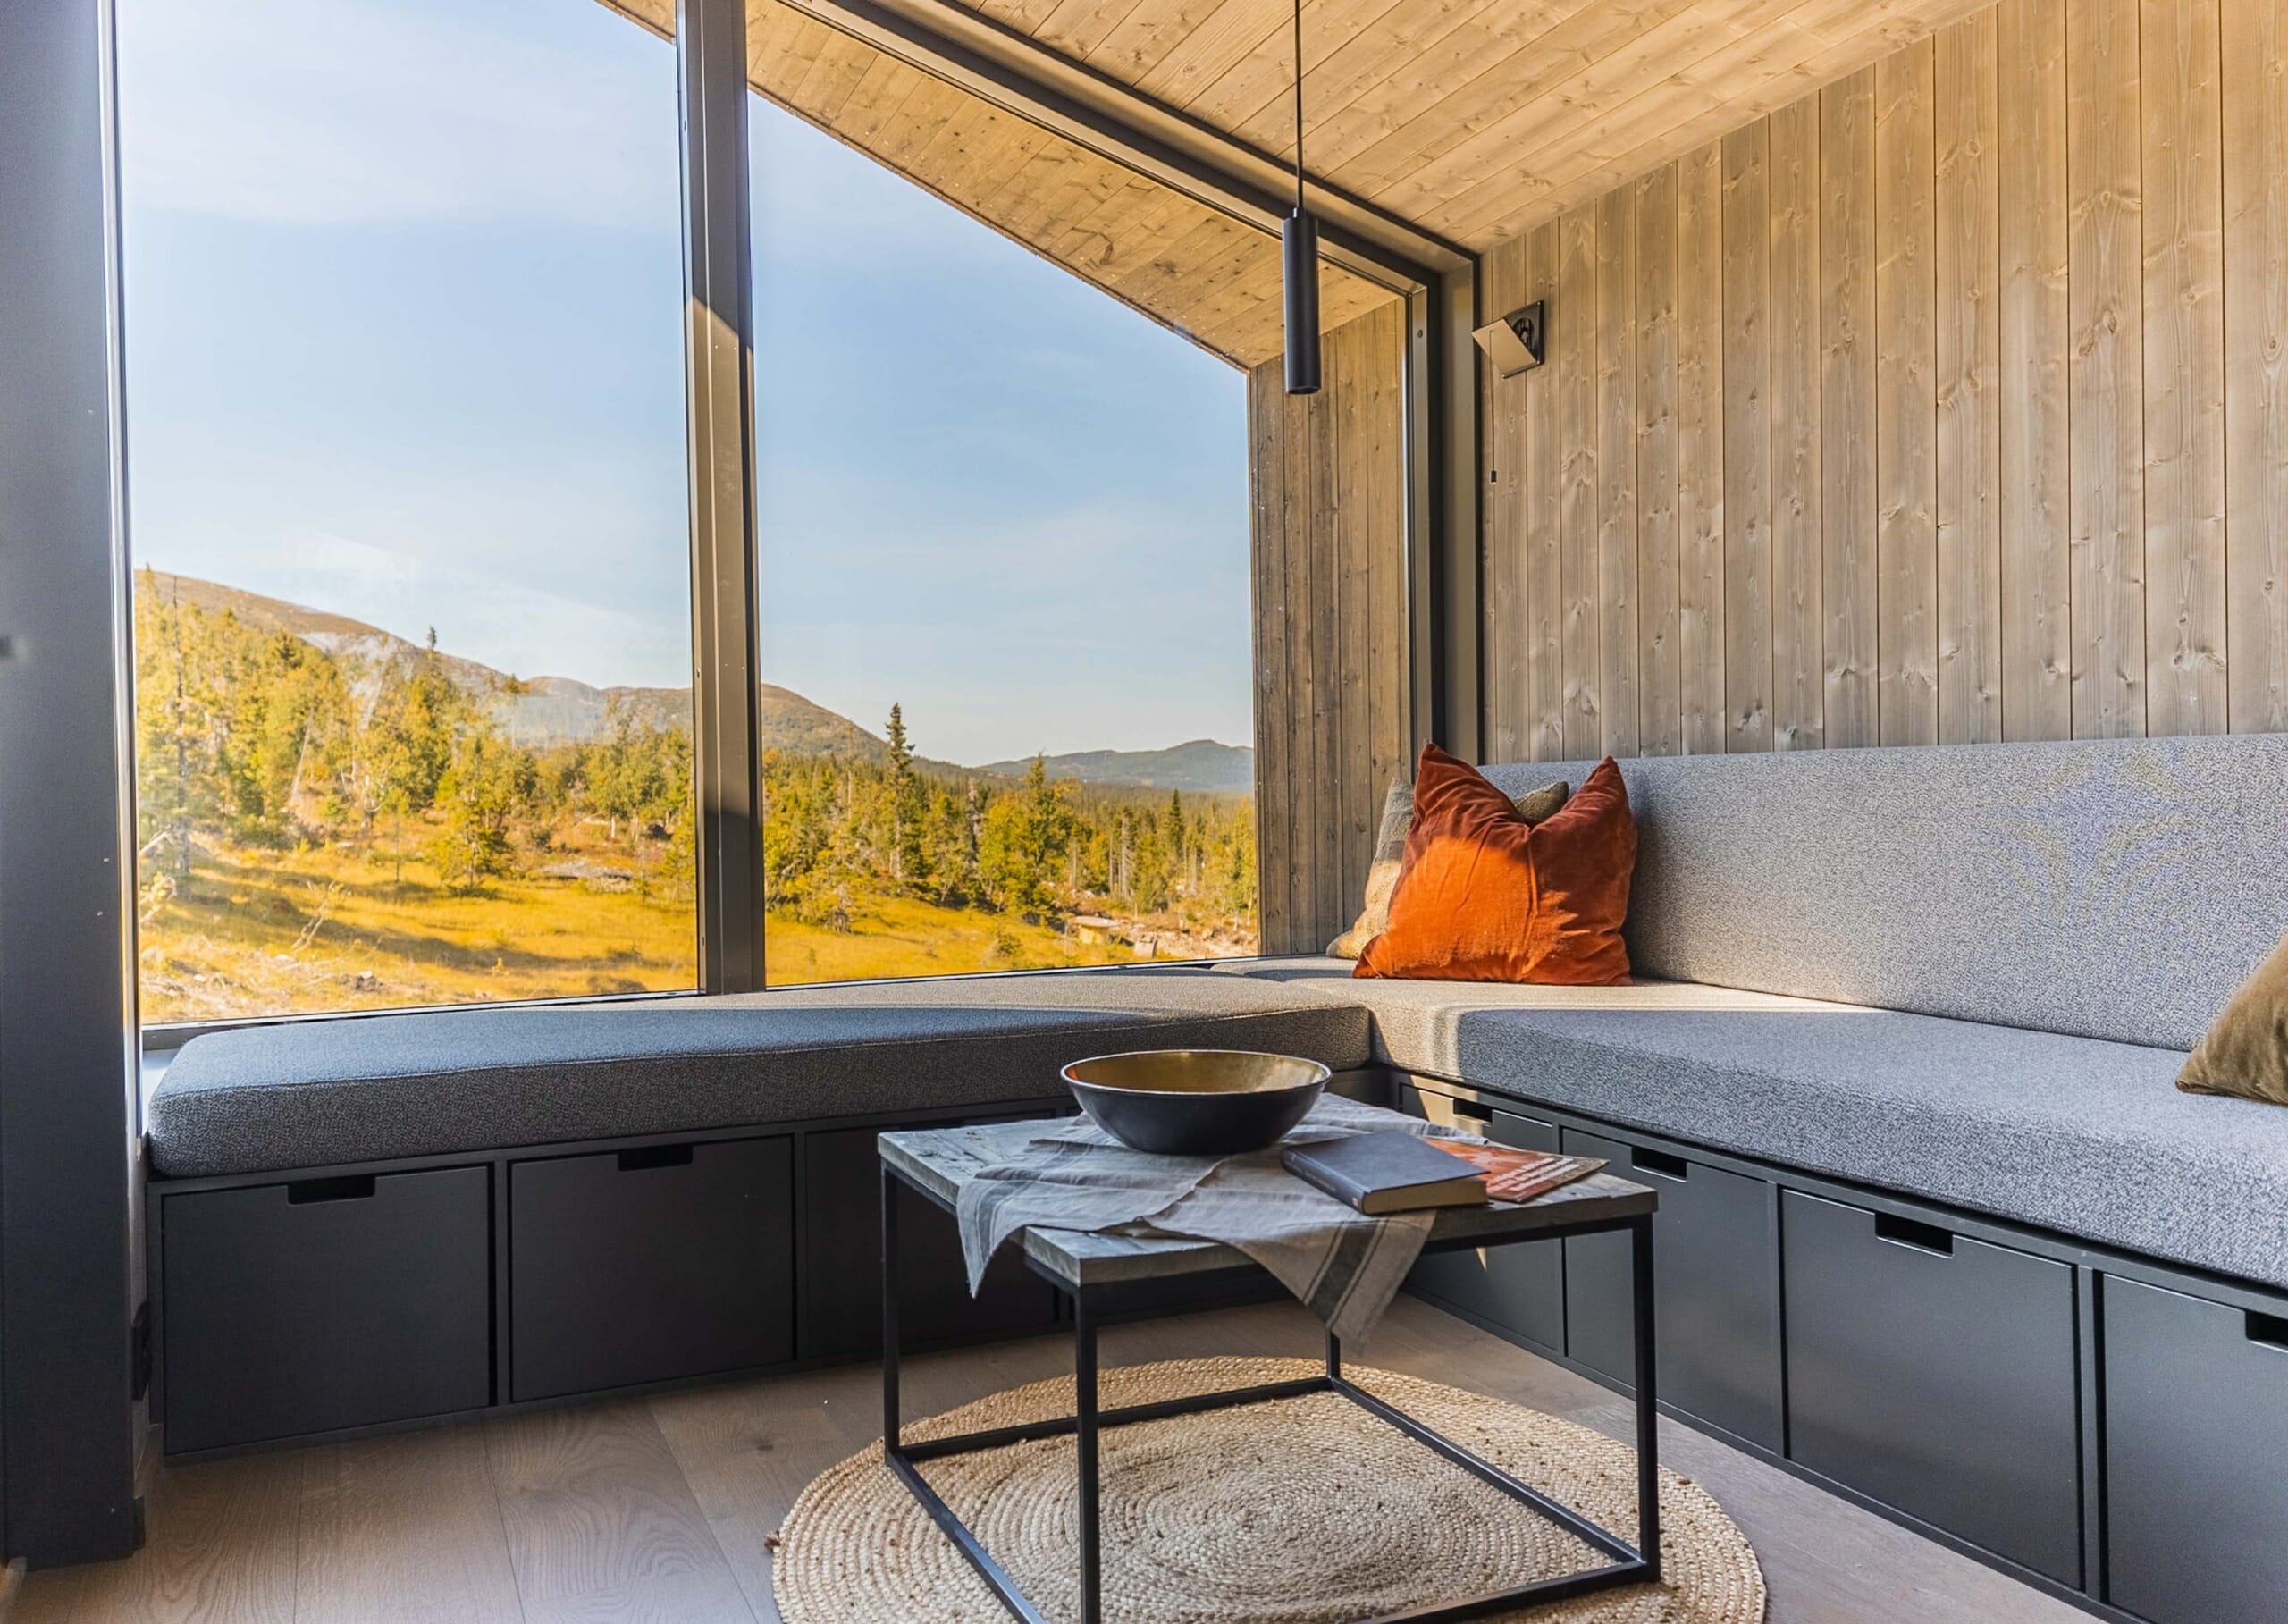 Foto. Interiør stue med plassbygd hjørnesofa. Store vinduer med utsikt til fjellandskap i høstfarger.